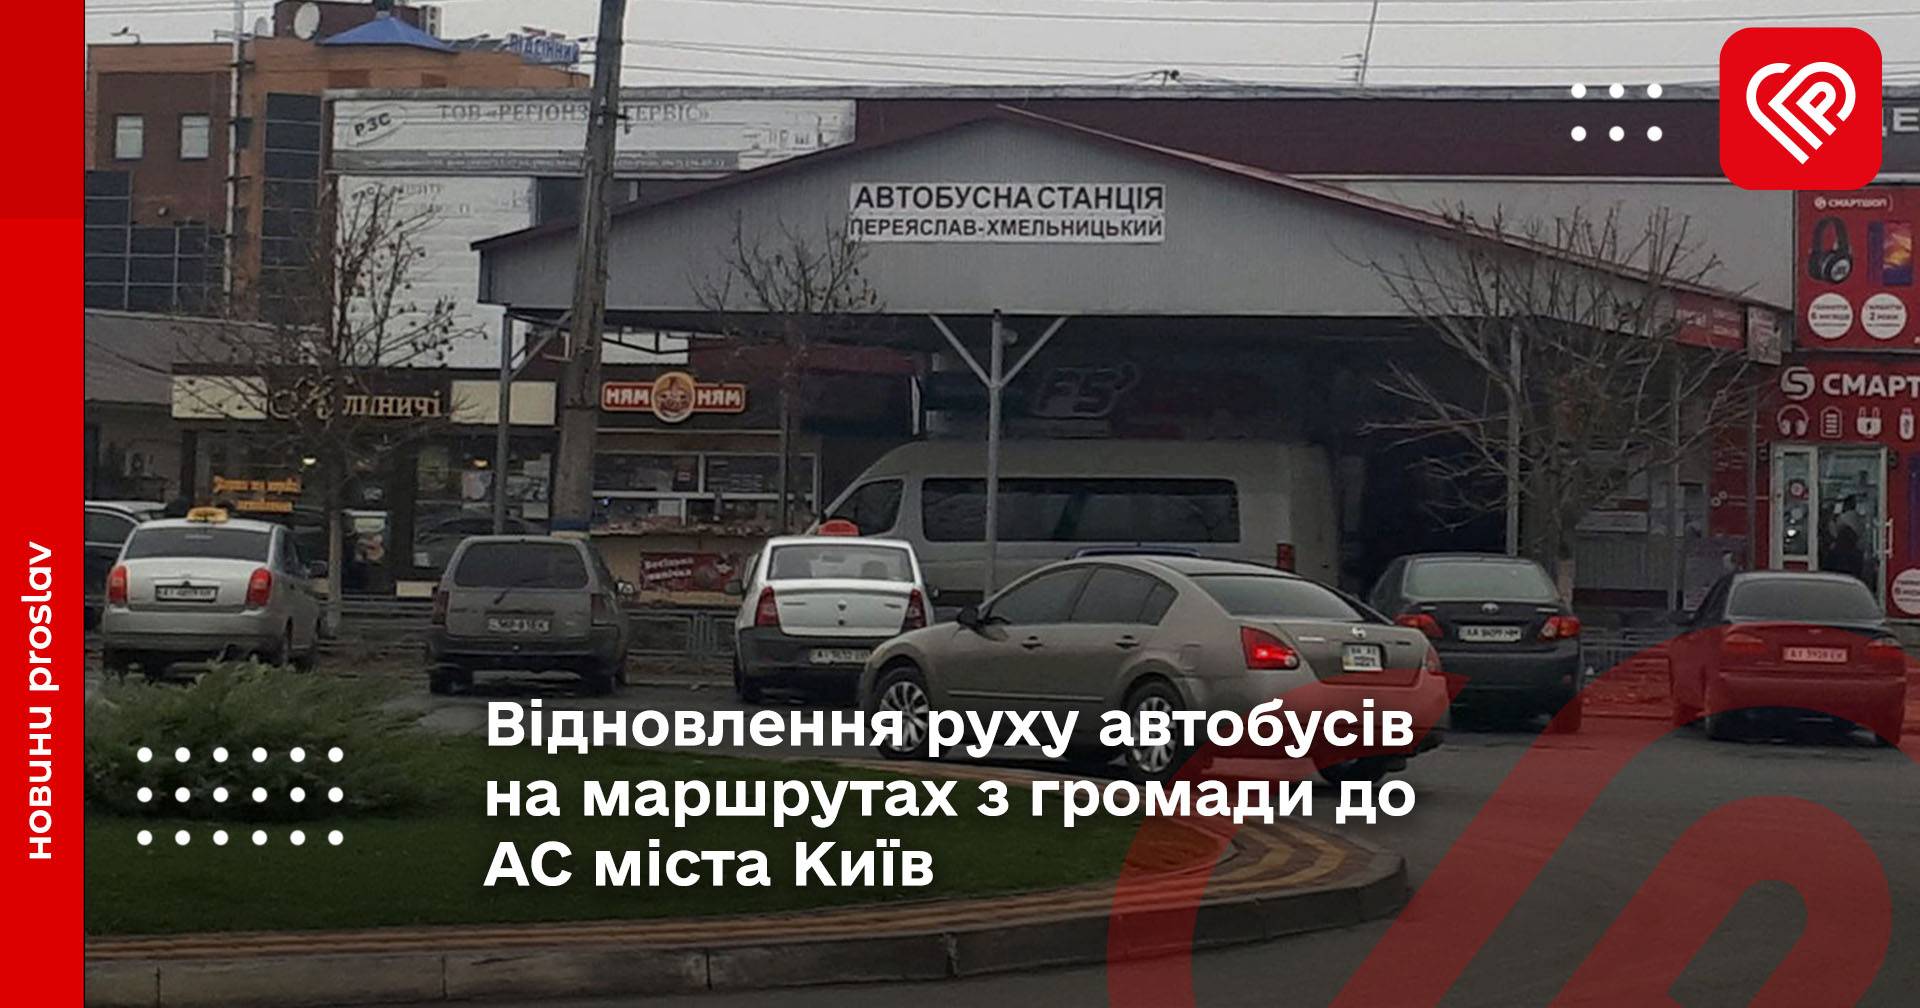 Відновлення руху автобусів на маршрутах з громади до АС міста Київ